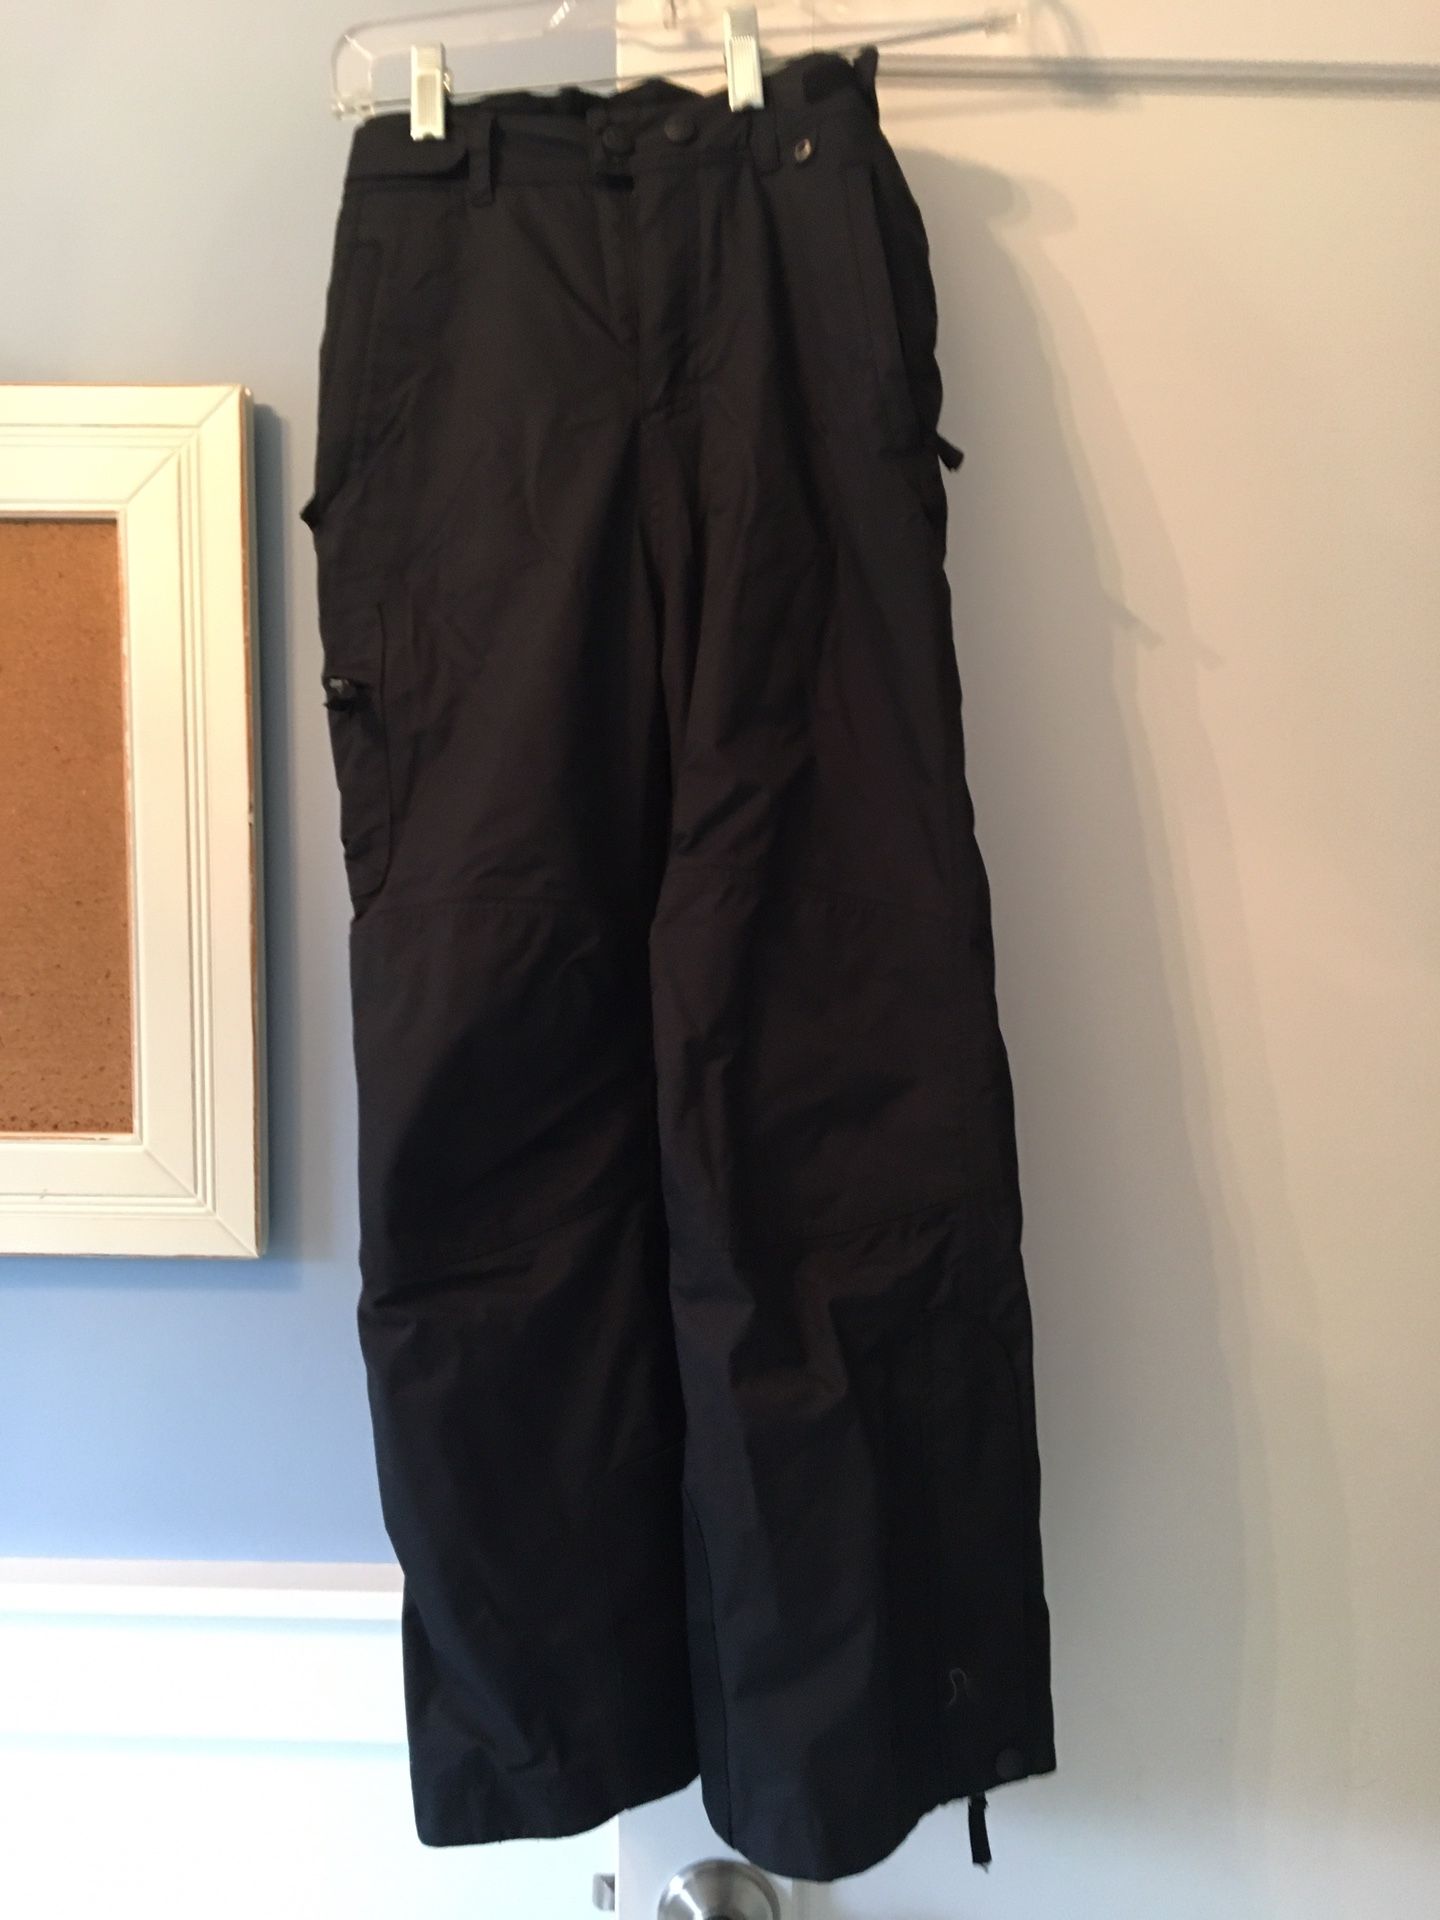 Size 8 REI black ski pants - kids